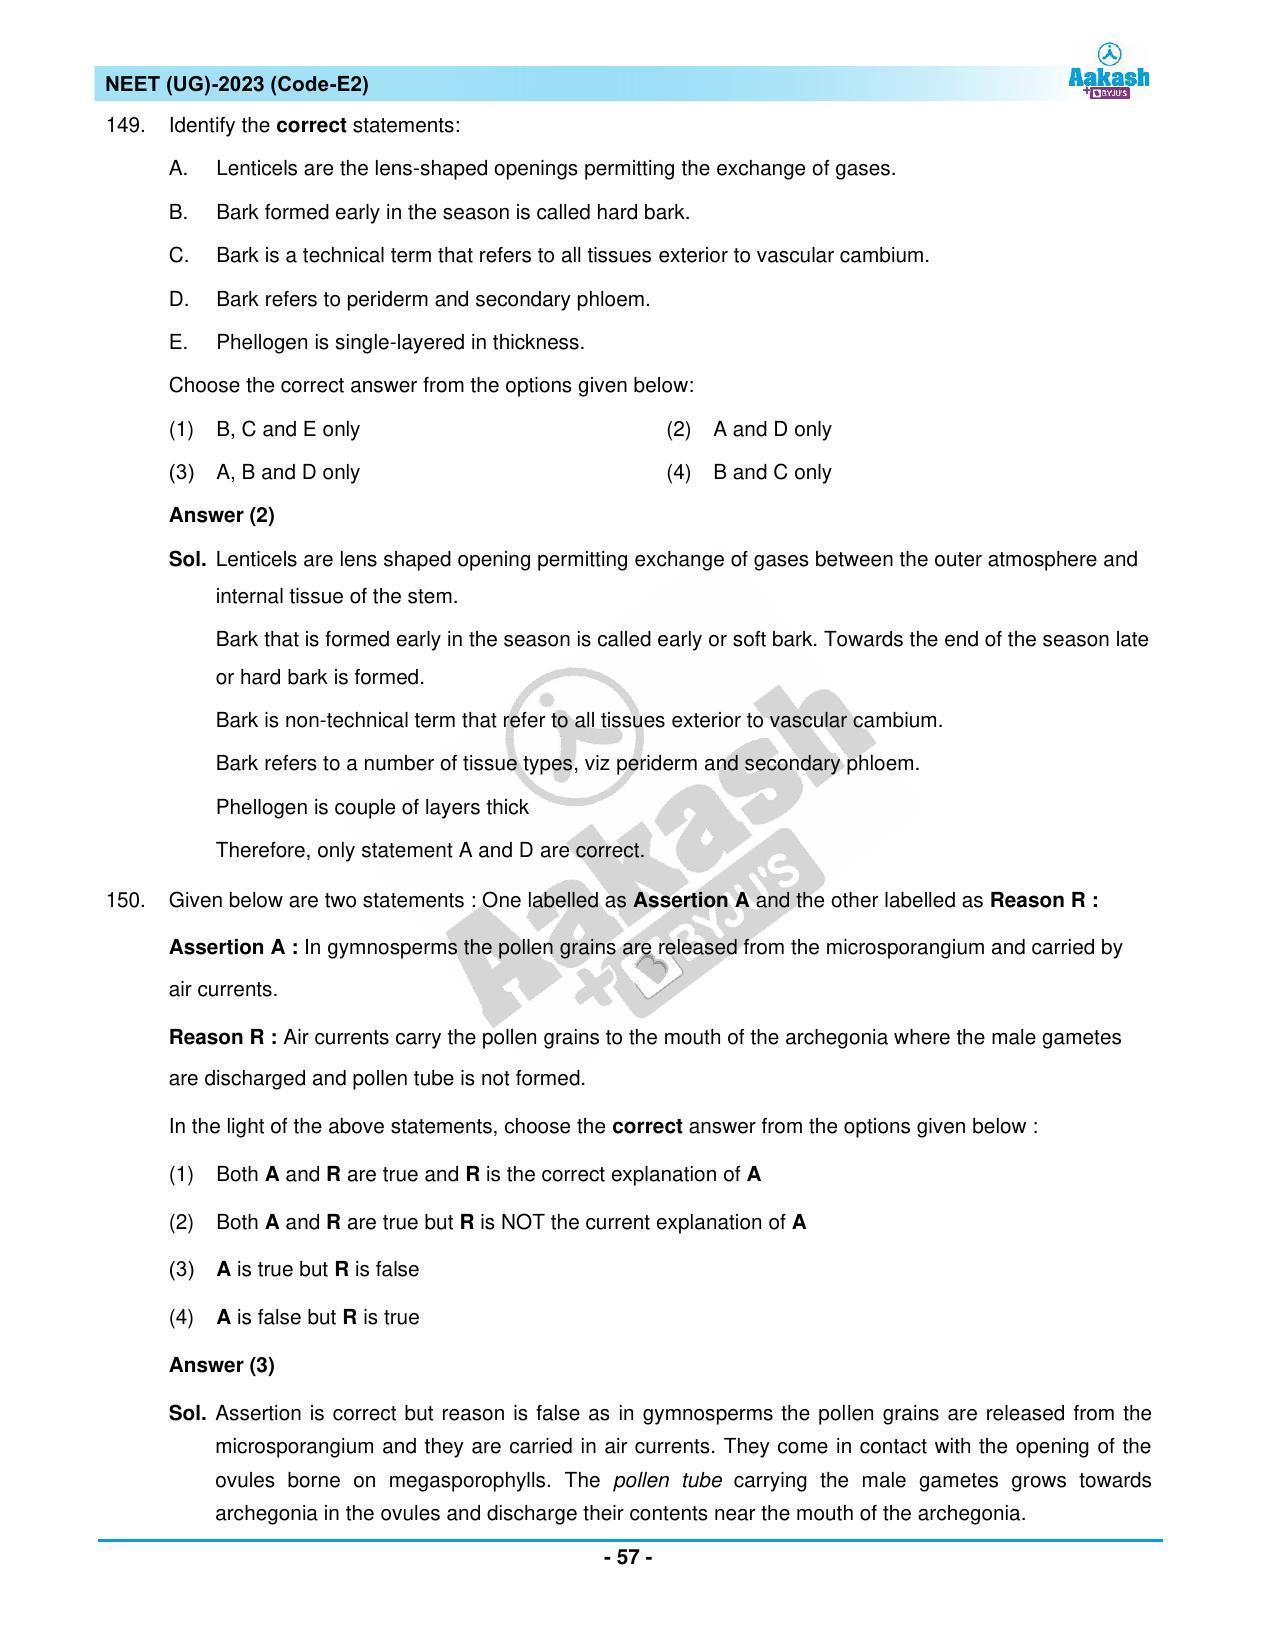 NEET 2023 Question Paper E2 - Page 57